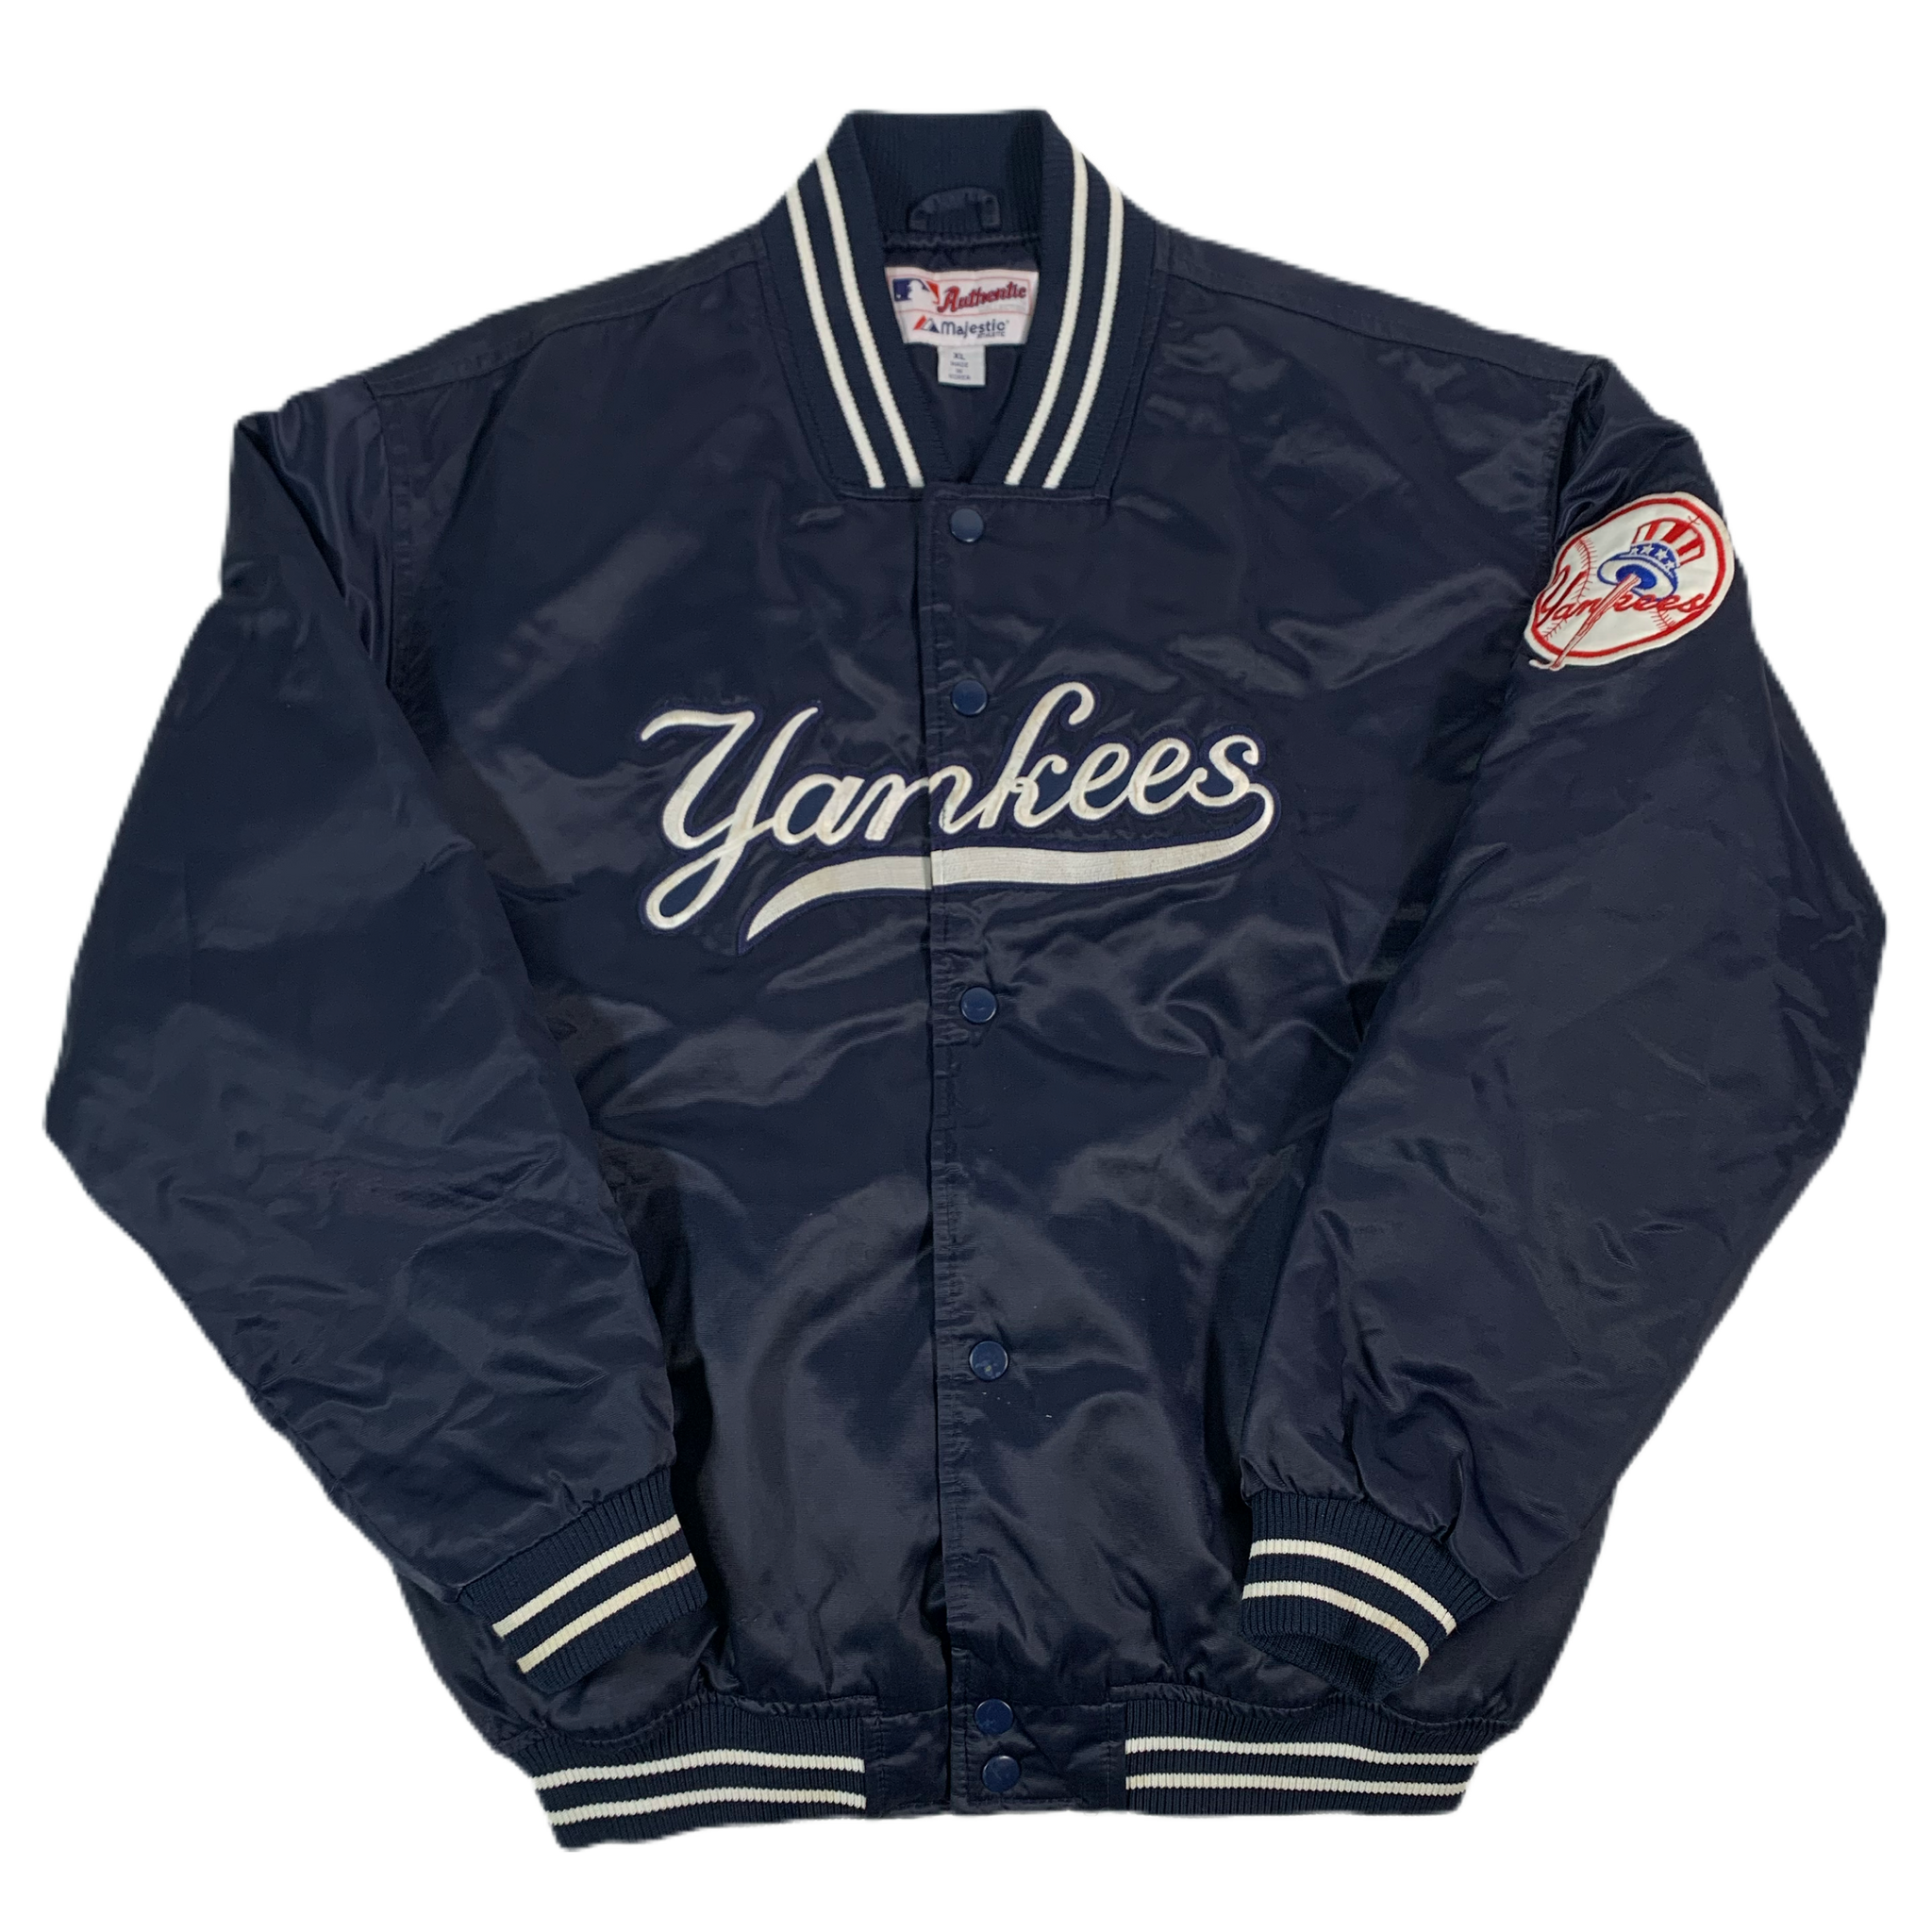 Majestic, Jackets & Coats, New York Yankees Jacket